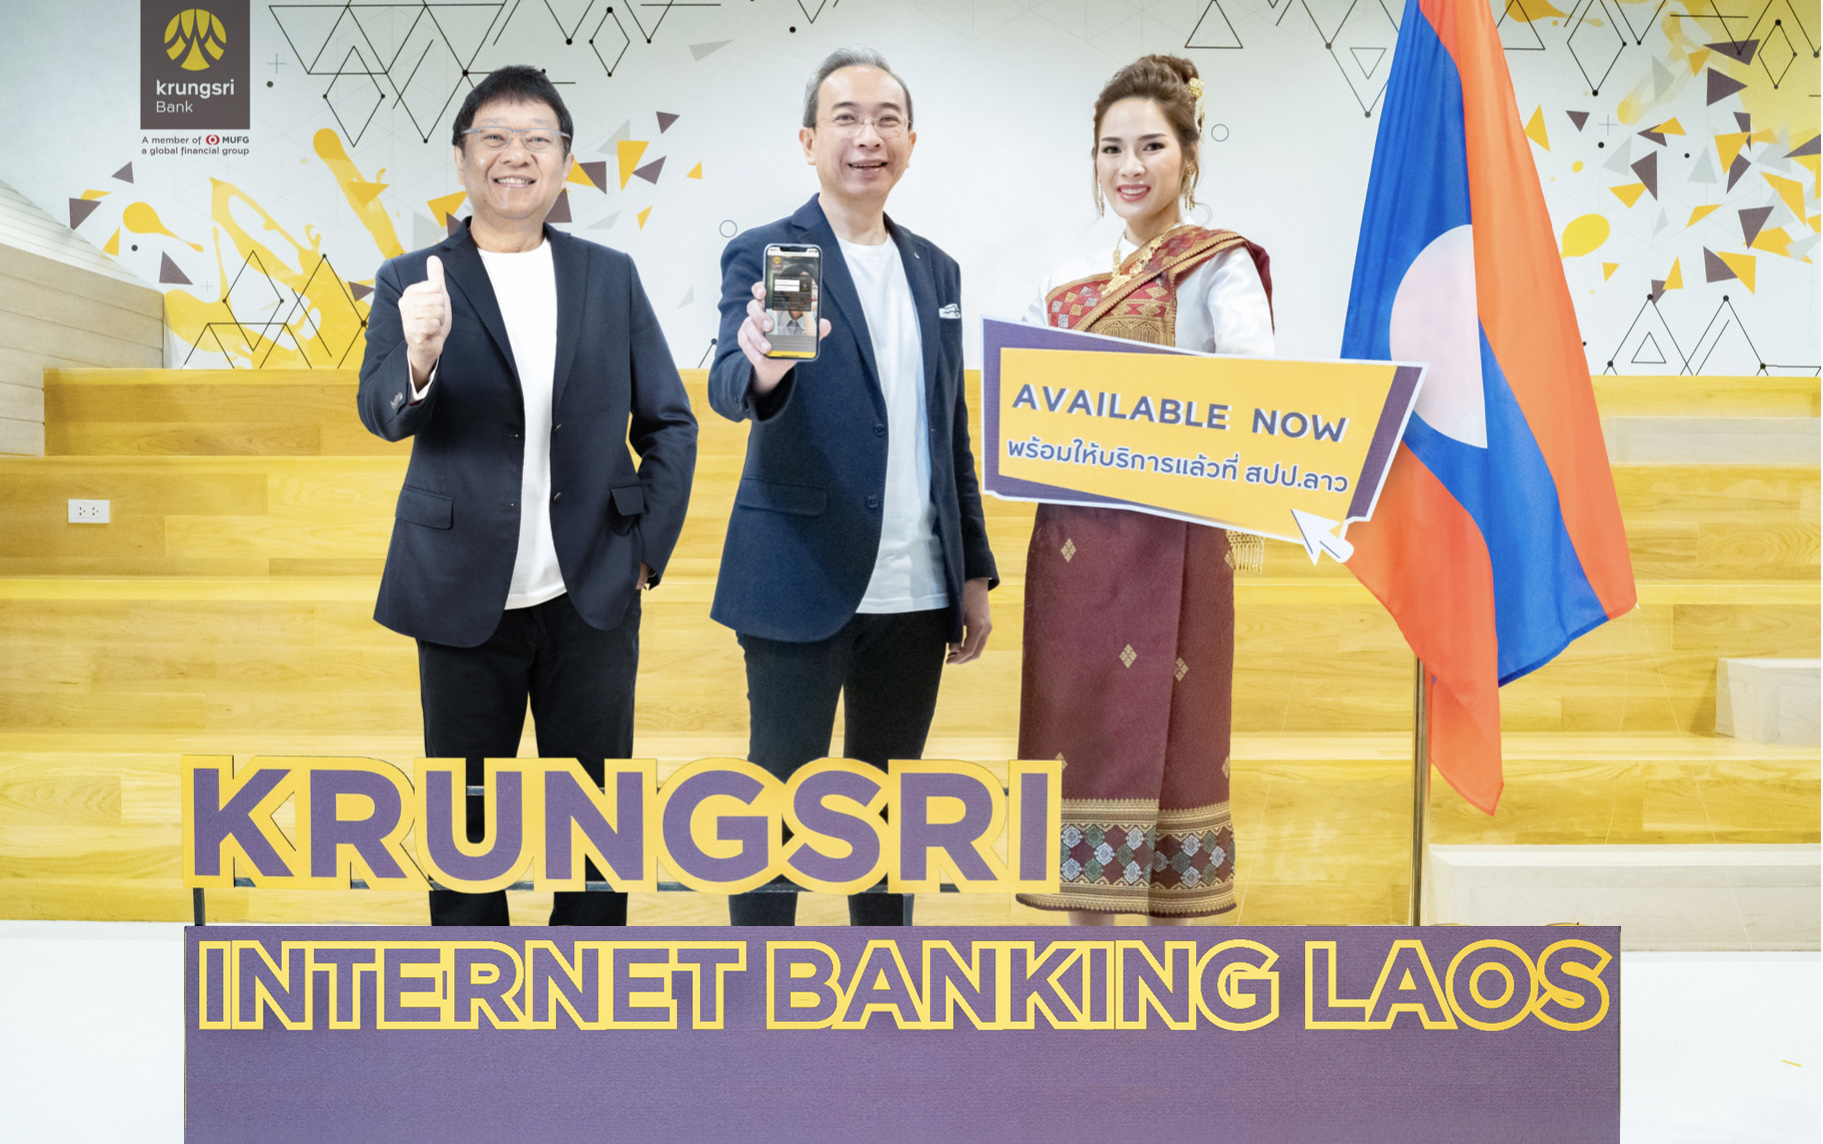 Krungsri Internet Banking Laos ทำเรื่องเงินให้เป็นเรื่องง่ายสำหรับภาคธุรกิจใน สปป.ลาว